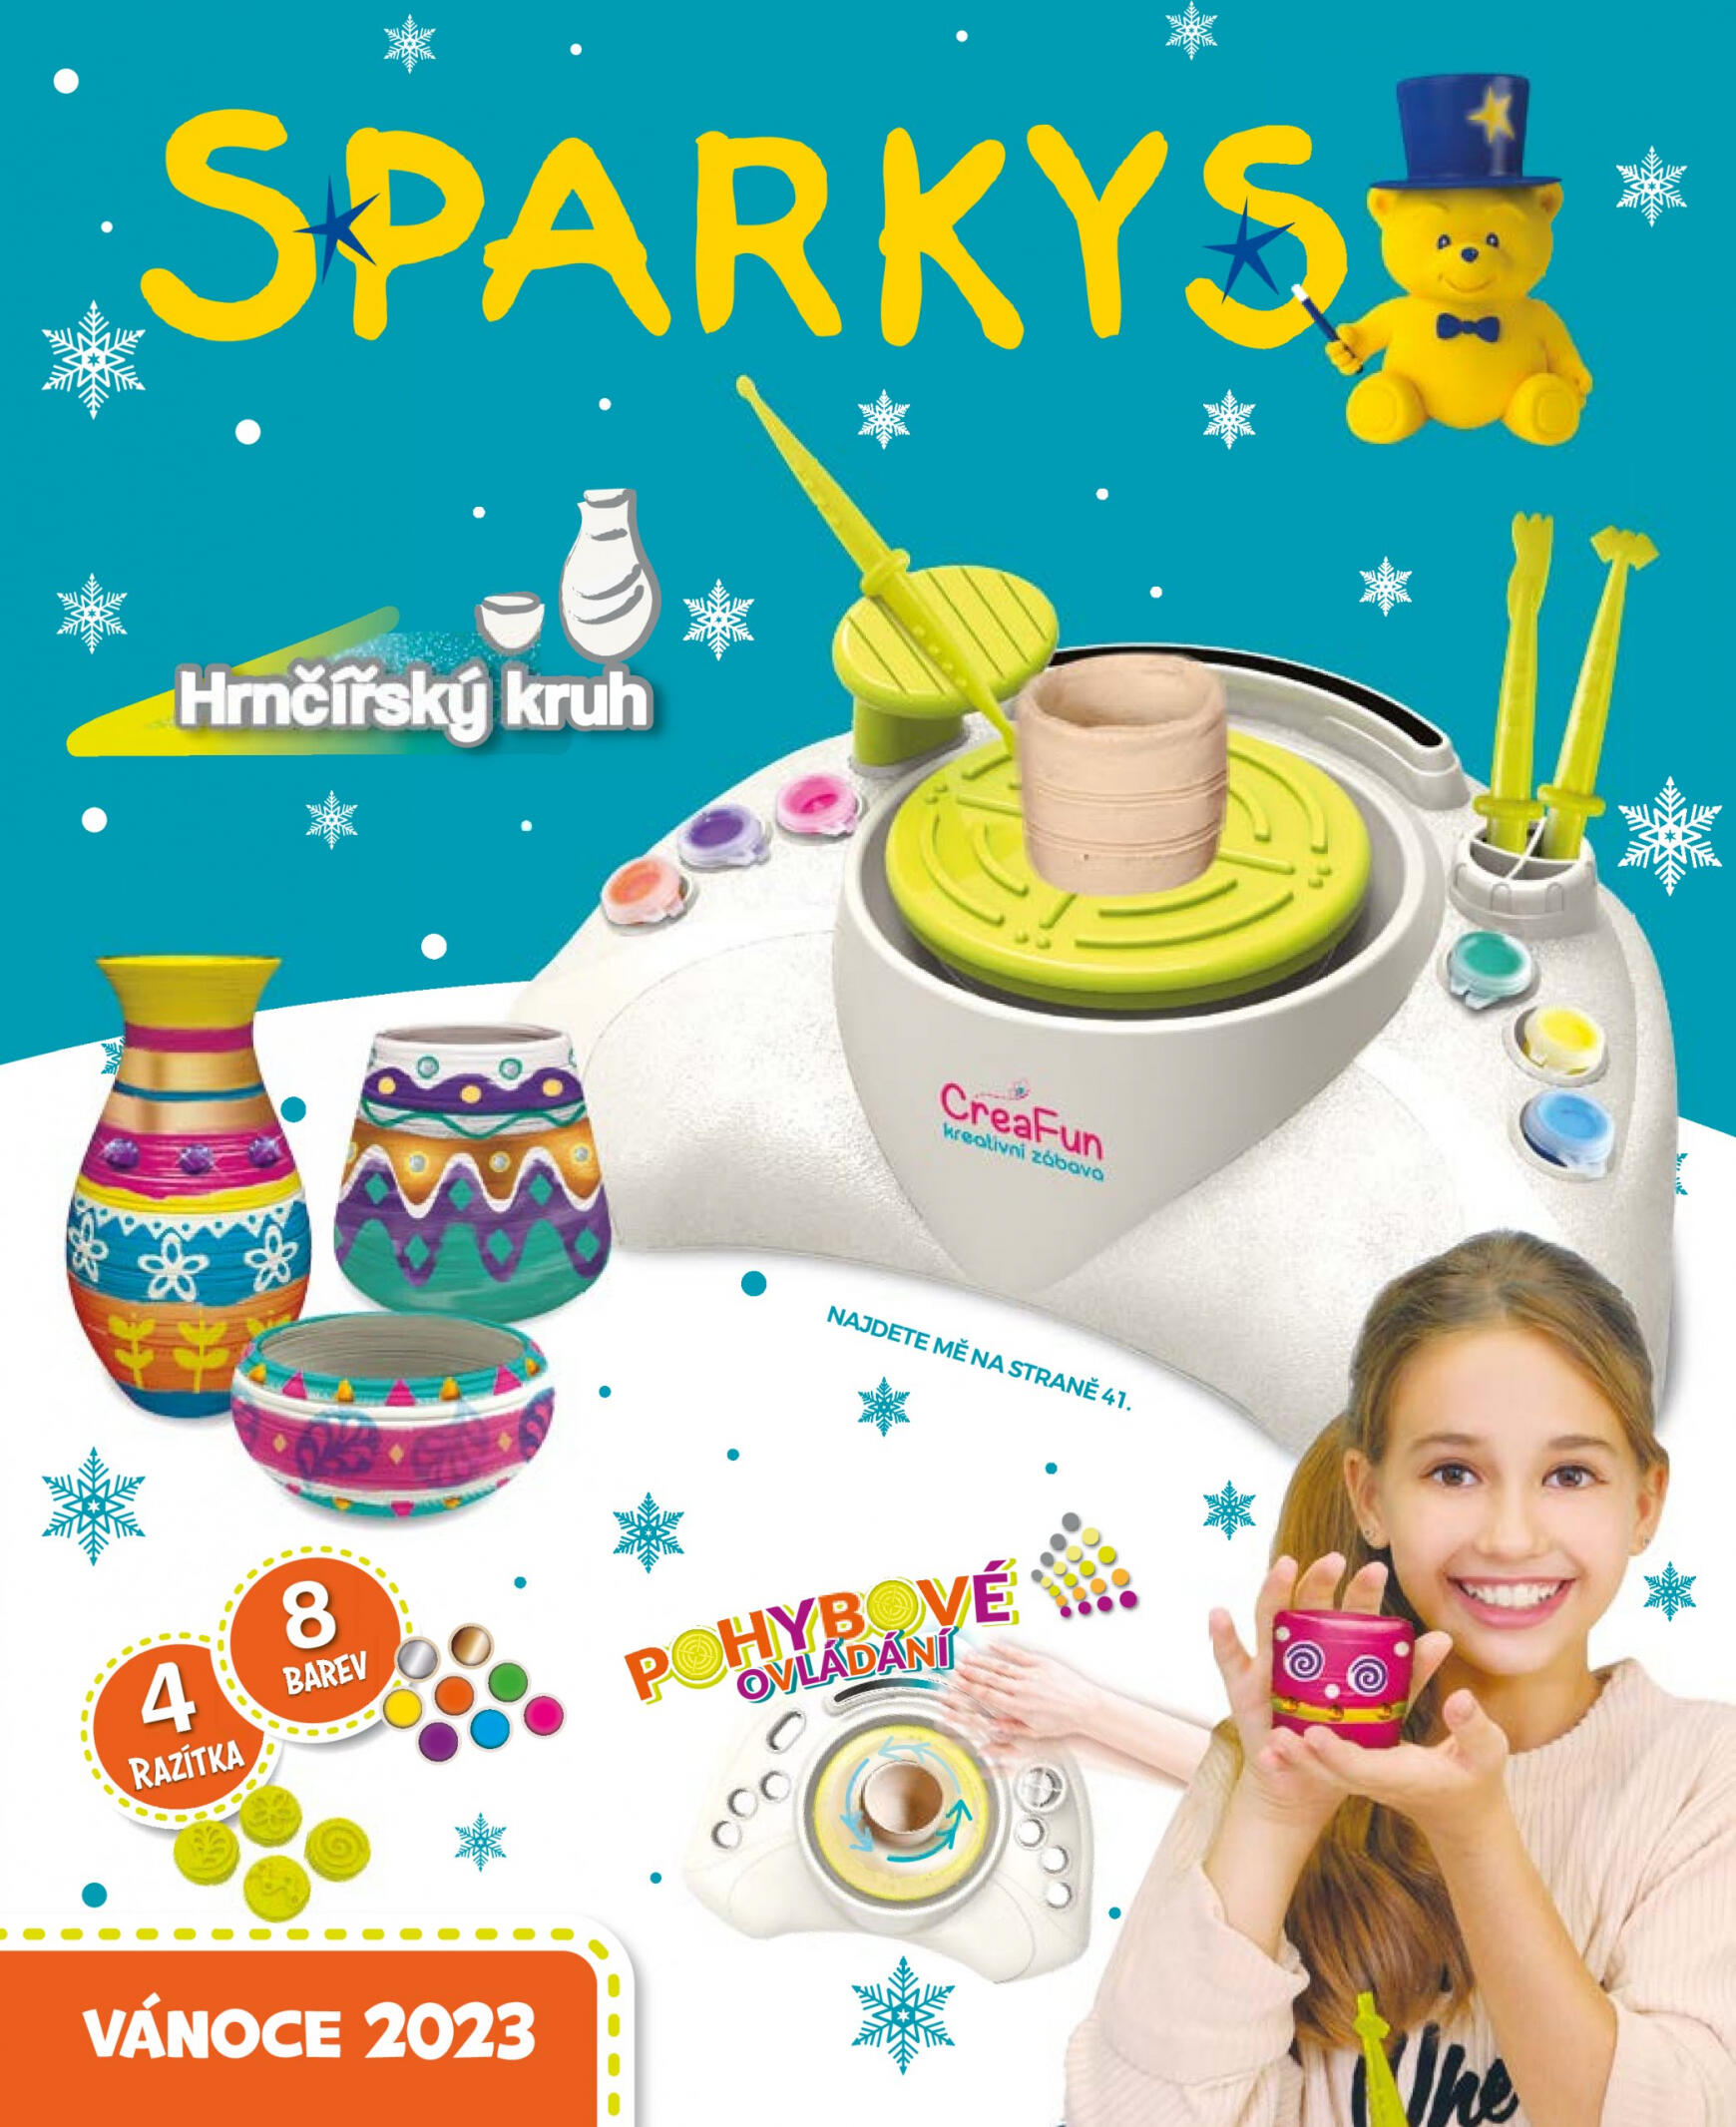 sparkys - Sparkys platný od 01.10.2023